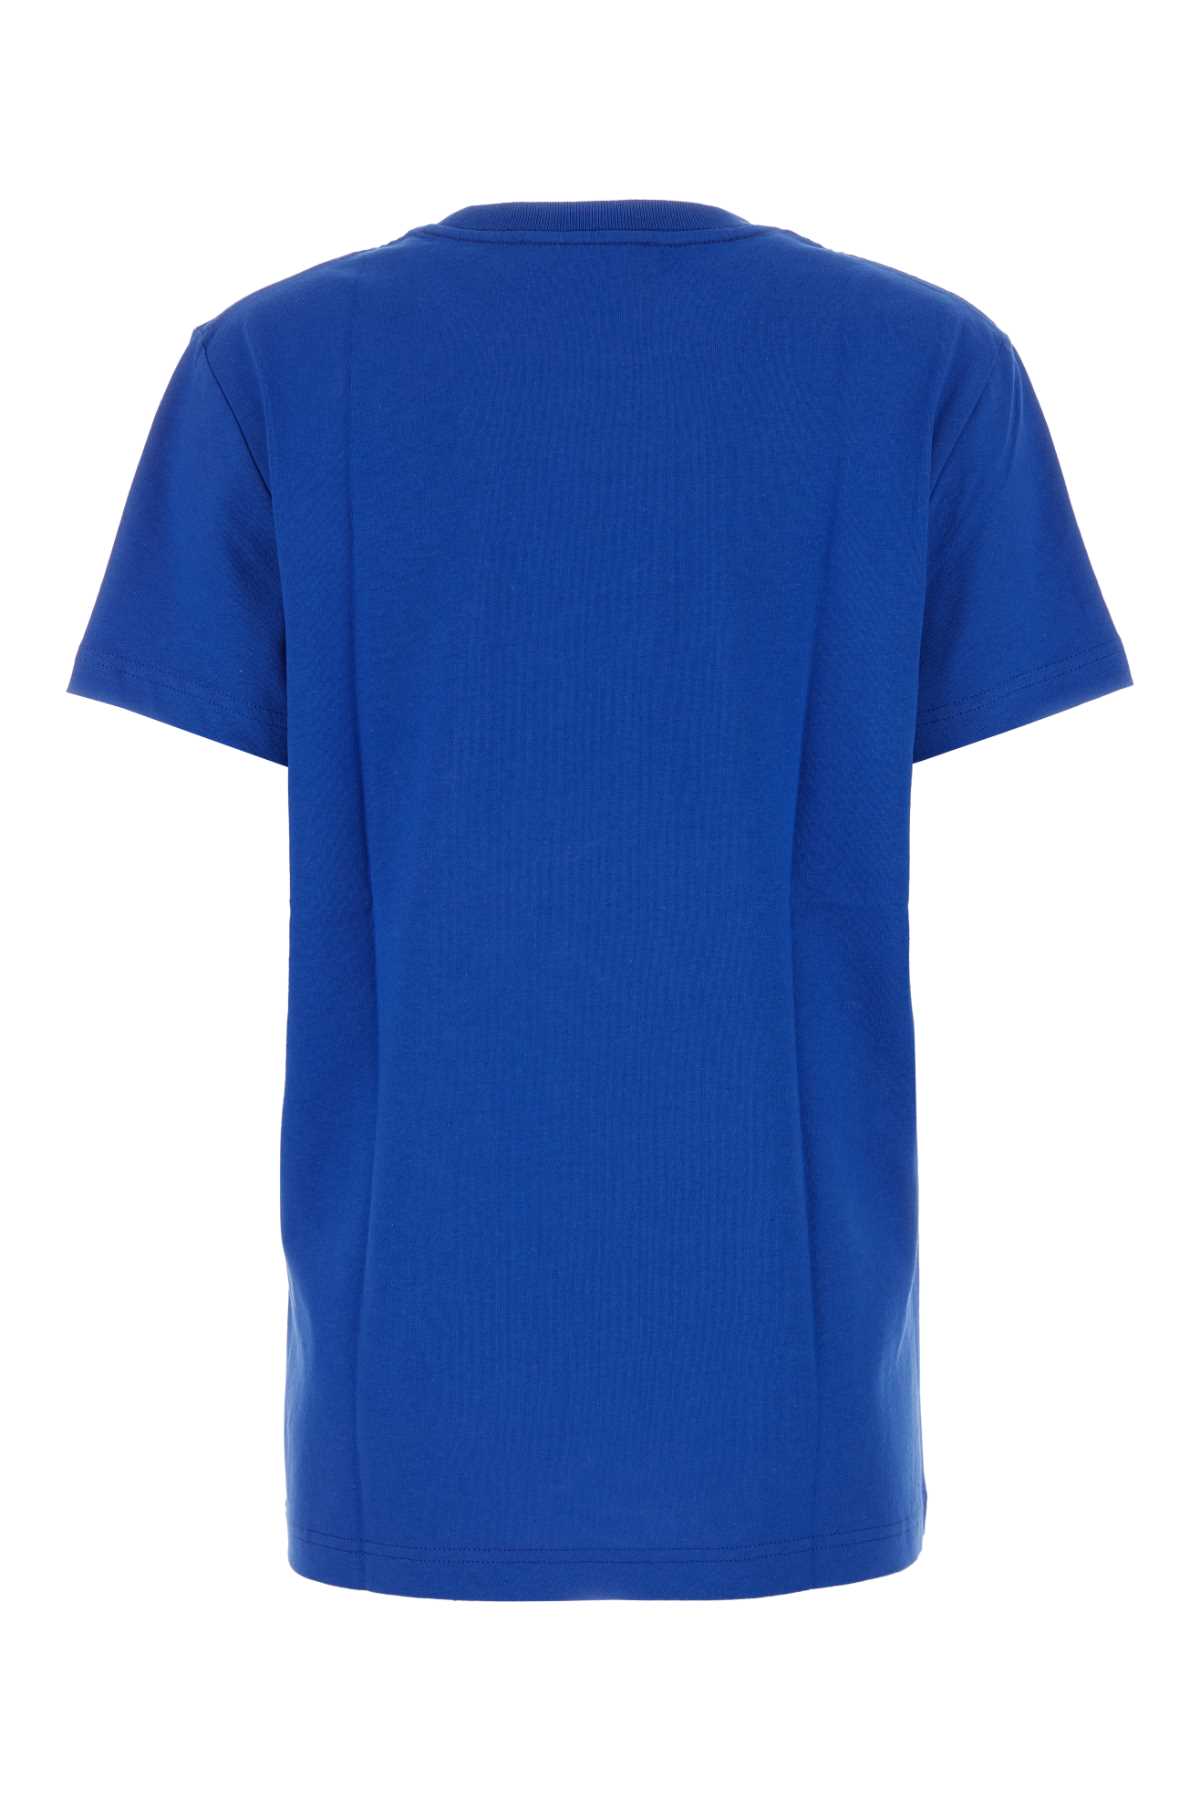 Apc Electric Blue Cotton T-shirt